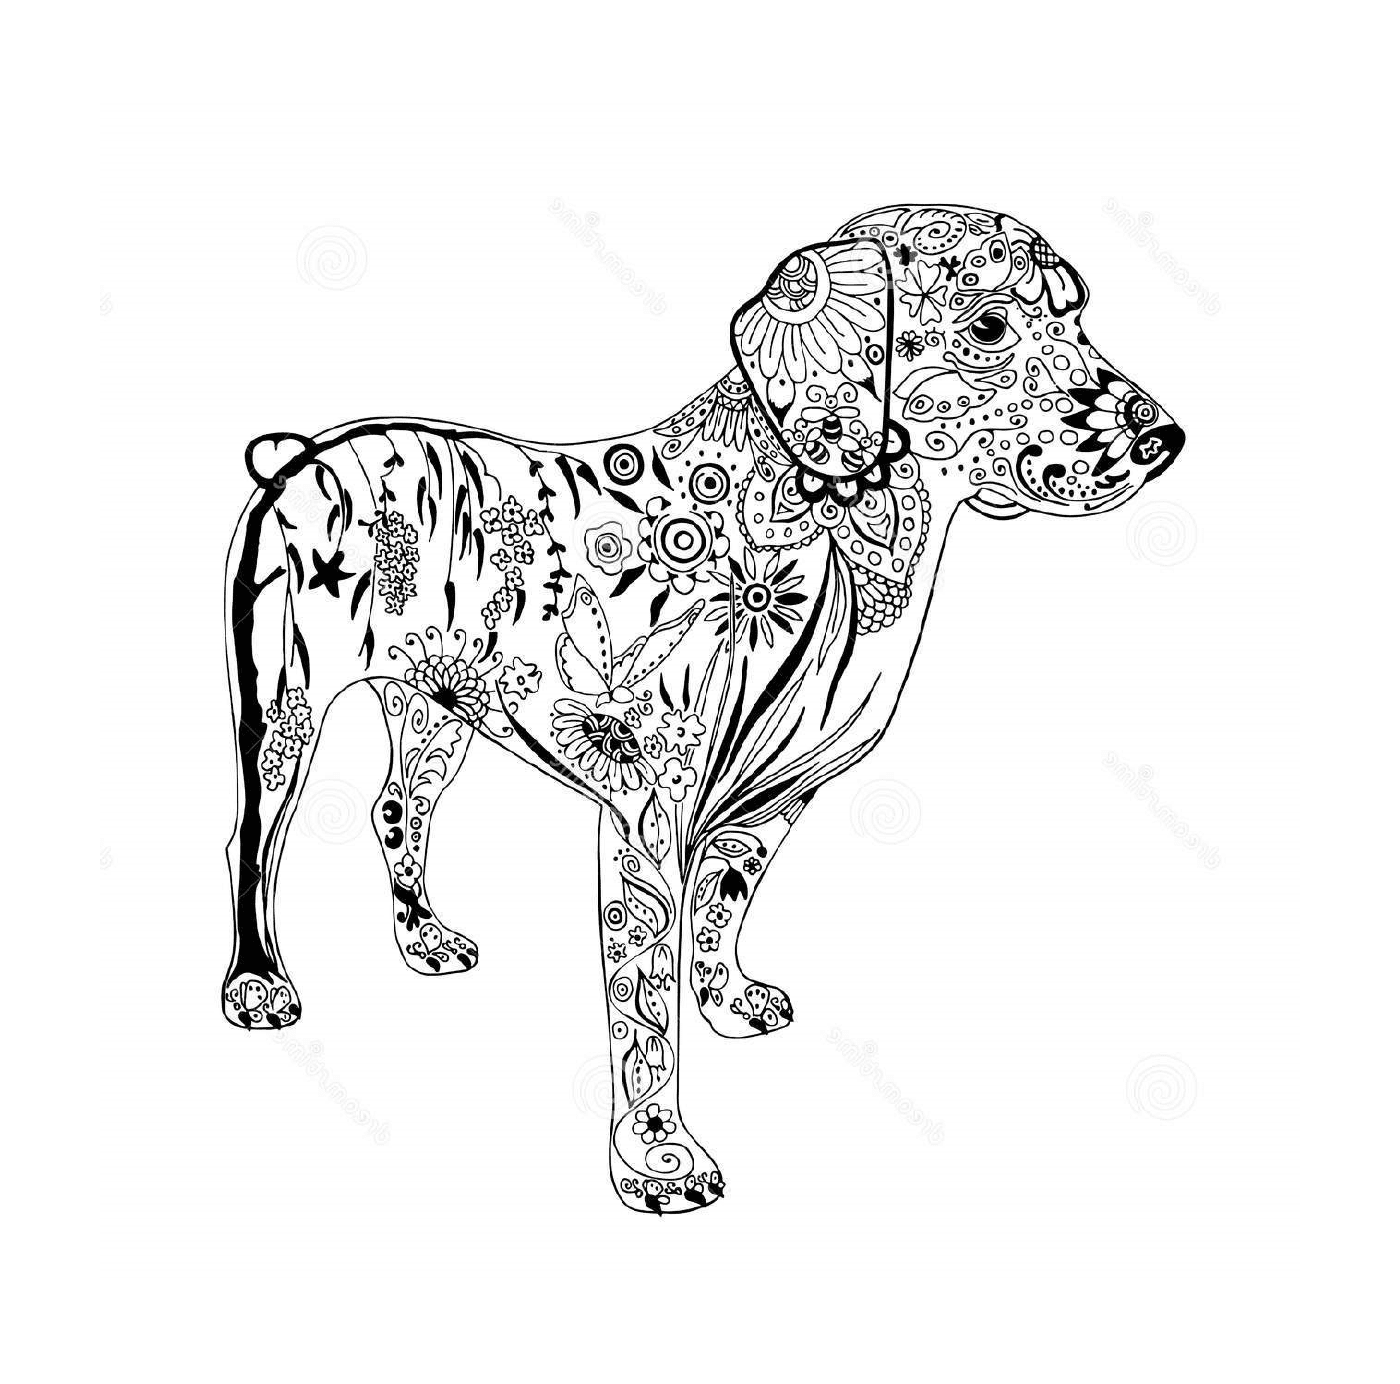  Cão com doodle e motivos zentangle 